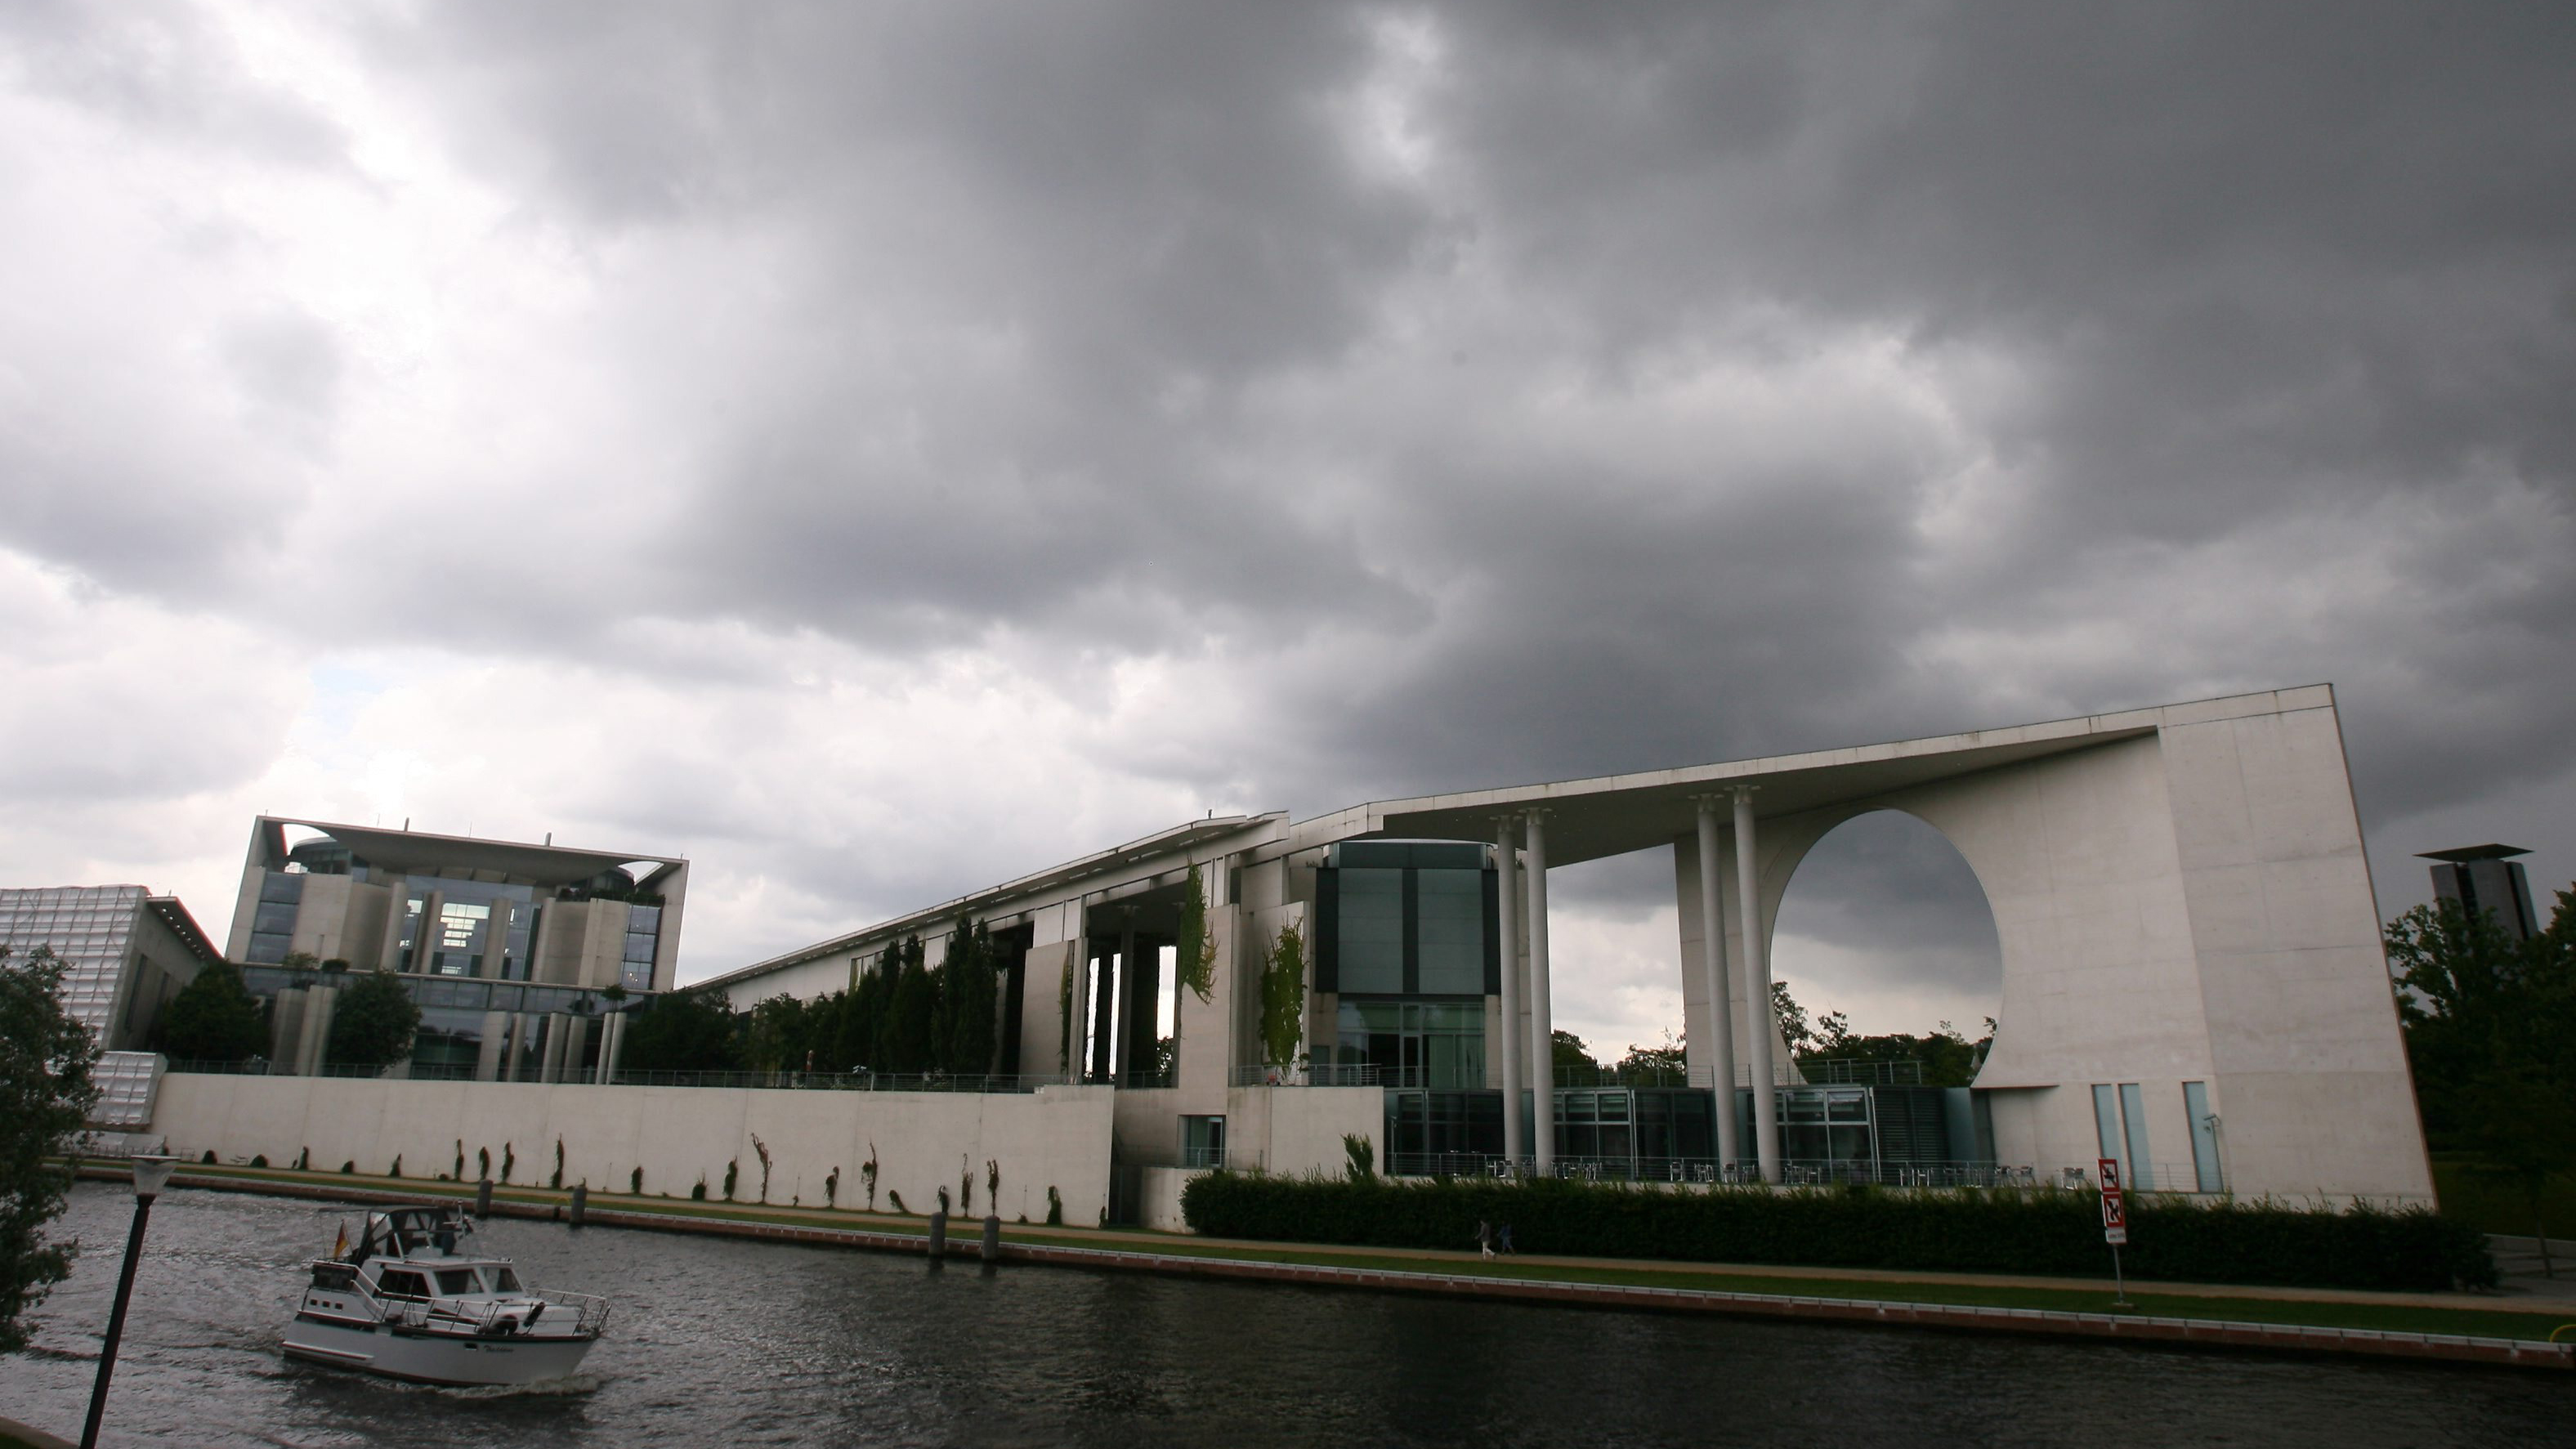 Dunkle Wolken über dem Kanzleramt in Berlin | picture-alliance/ dpa